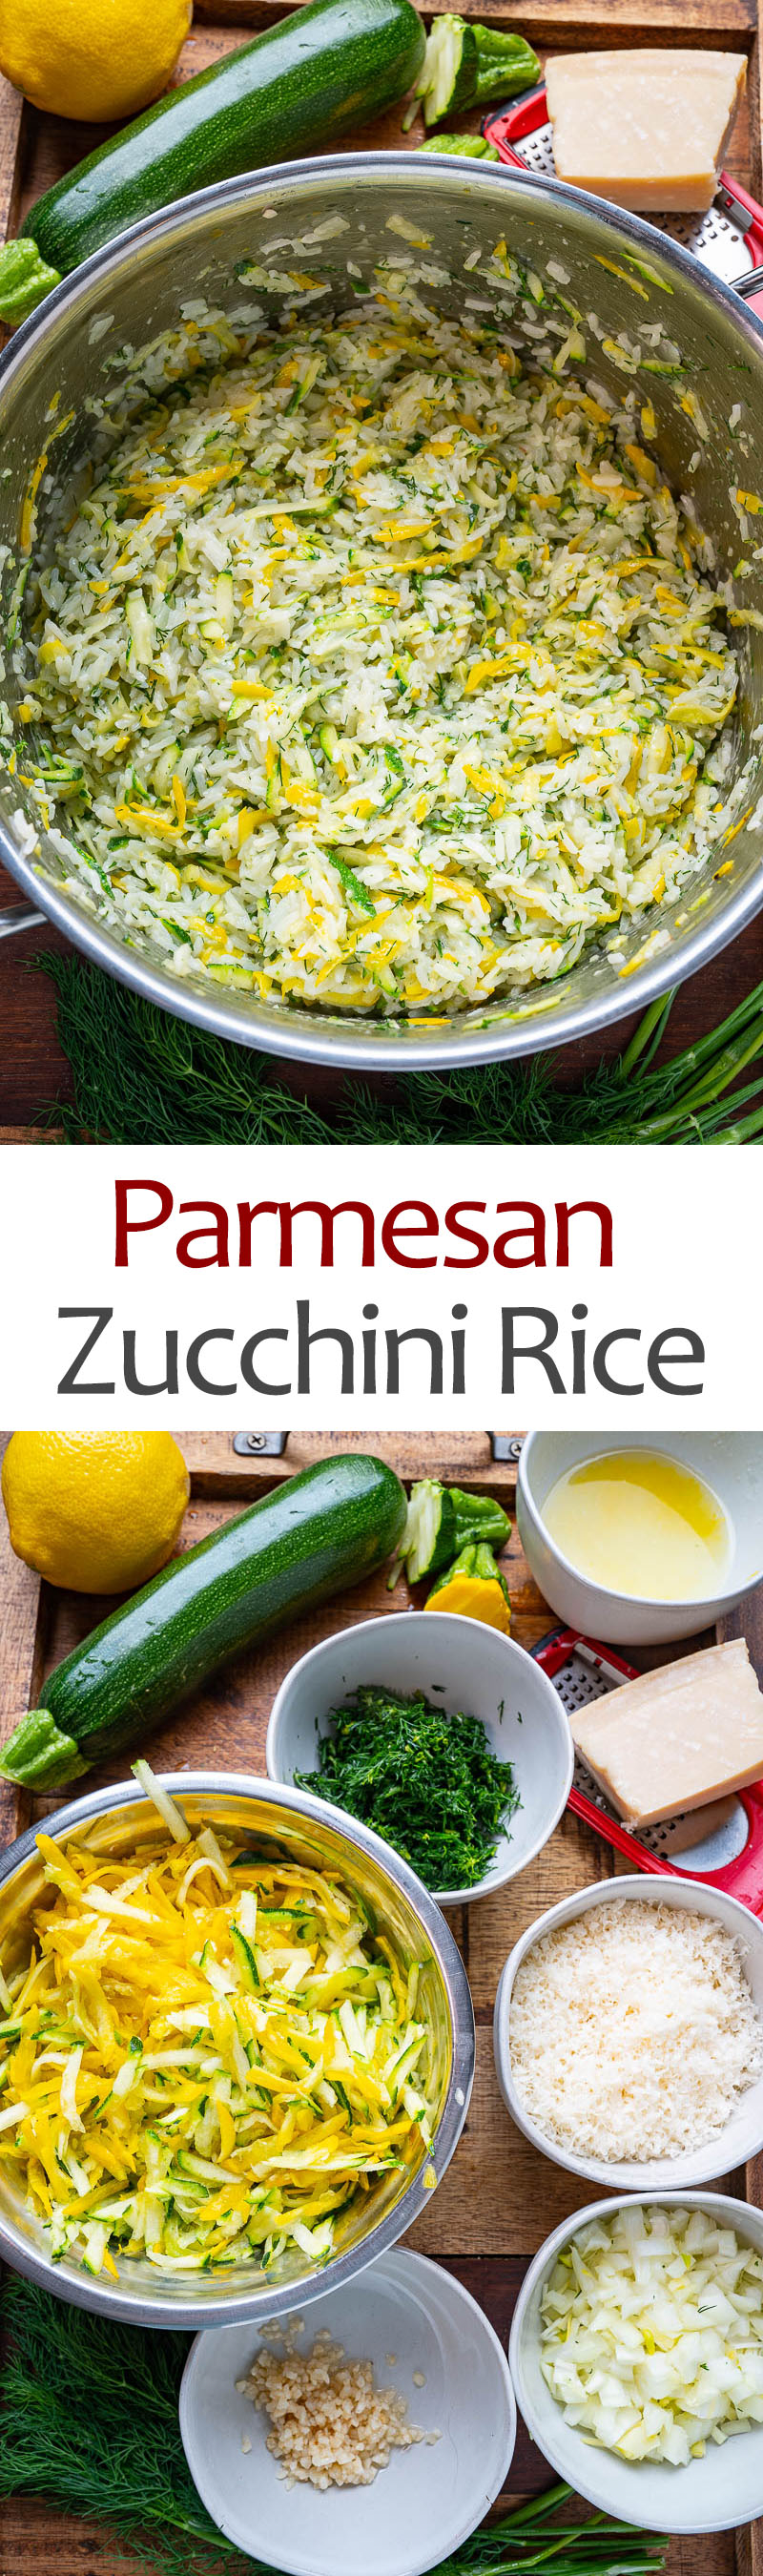 Parmesan Zucchini Rice